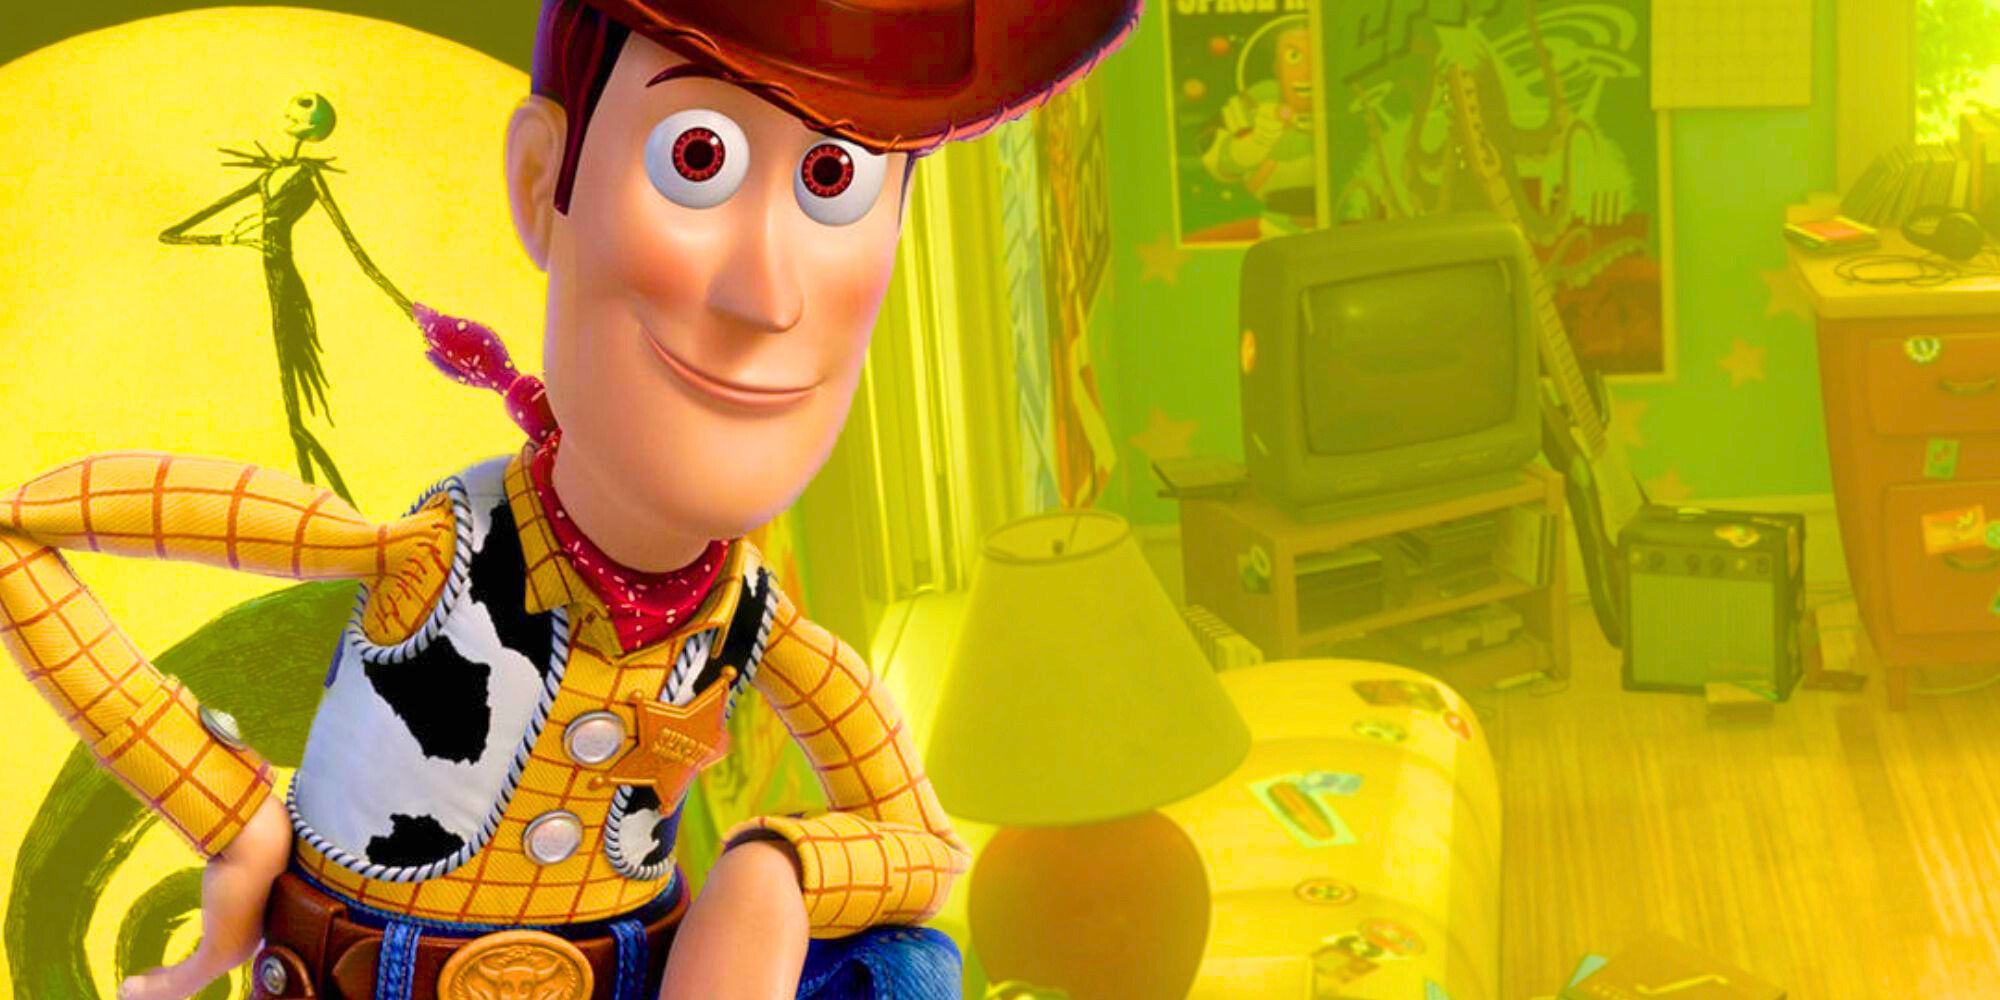 Este actor de Toy Story no ha interpretado ningún otro personaje de película desde 1995